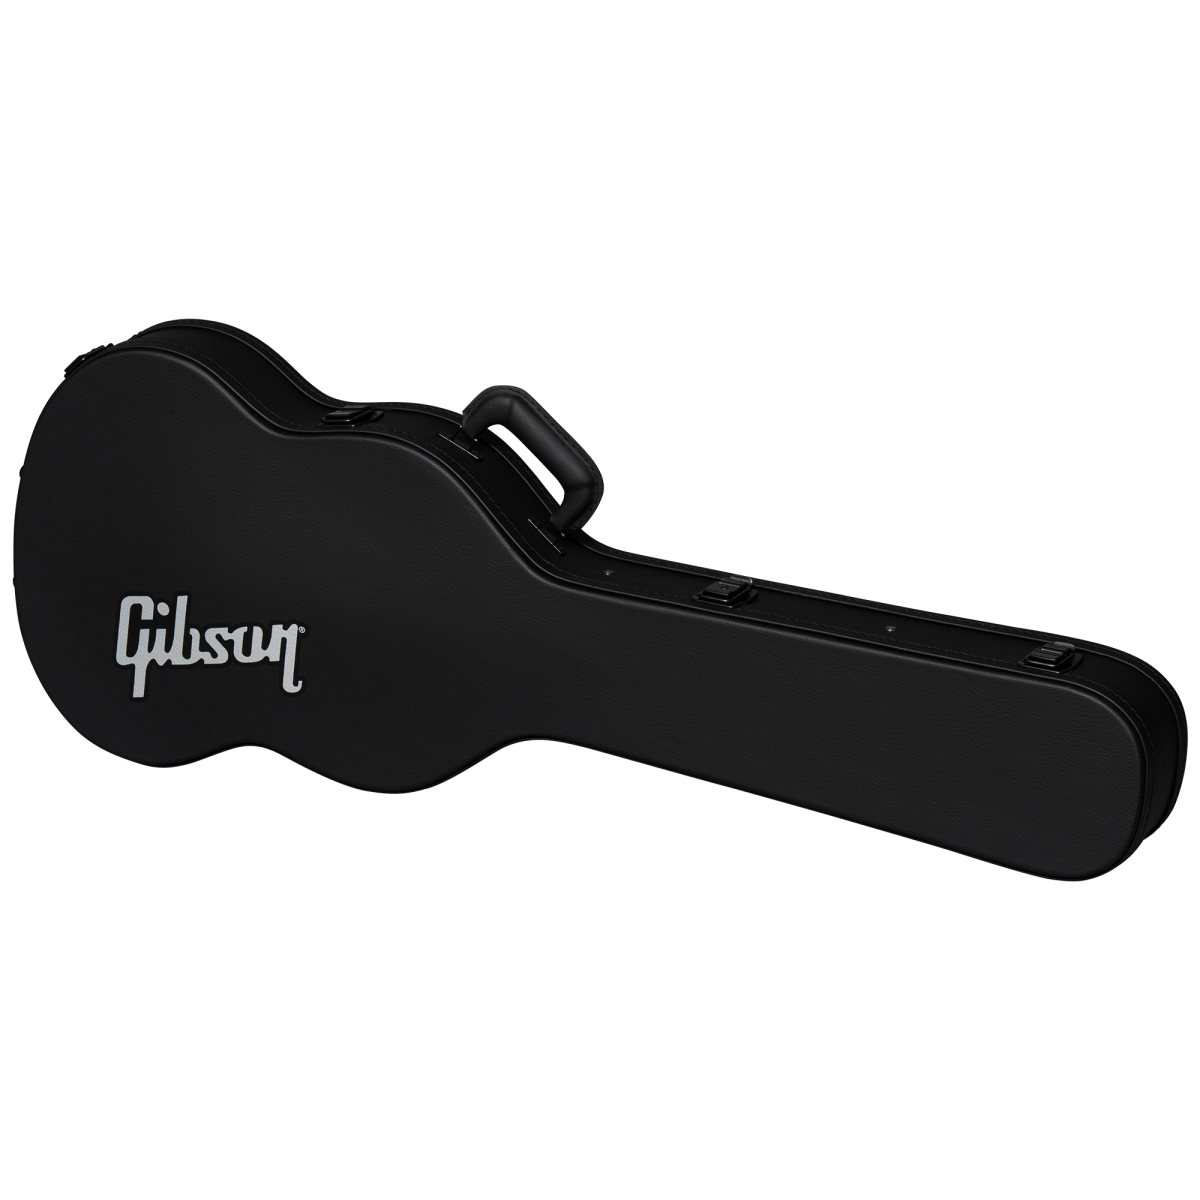 SG Modern Hardshell Case - Gibson